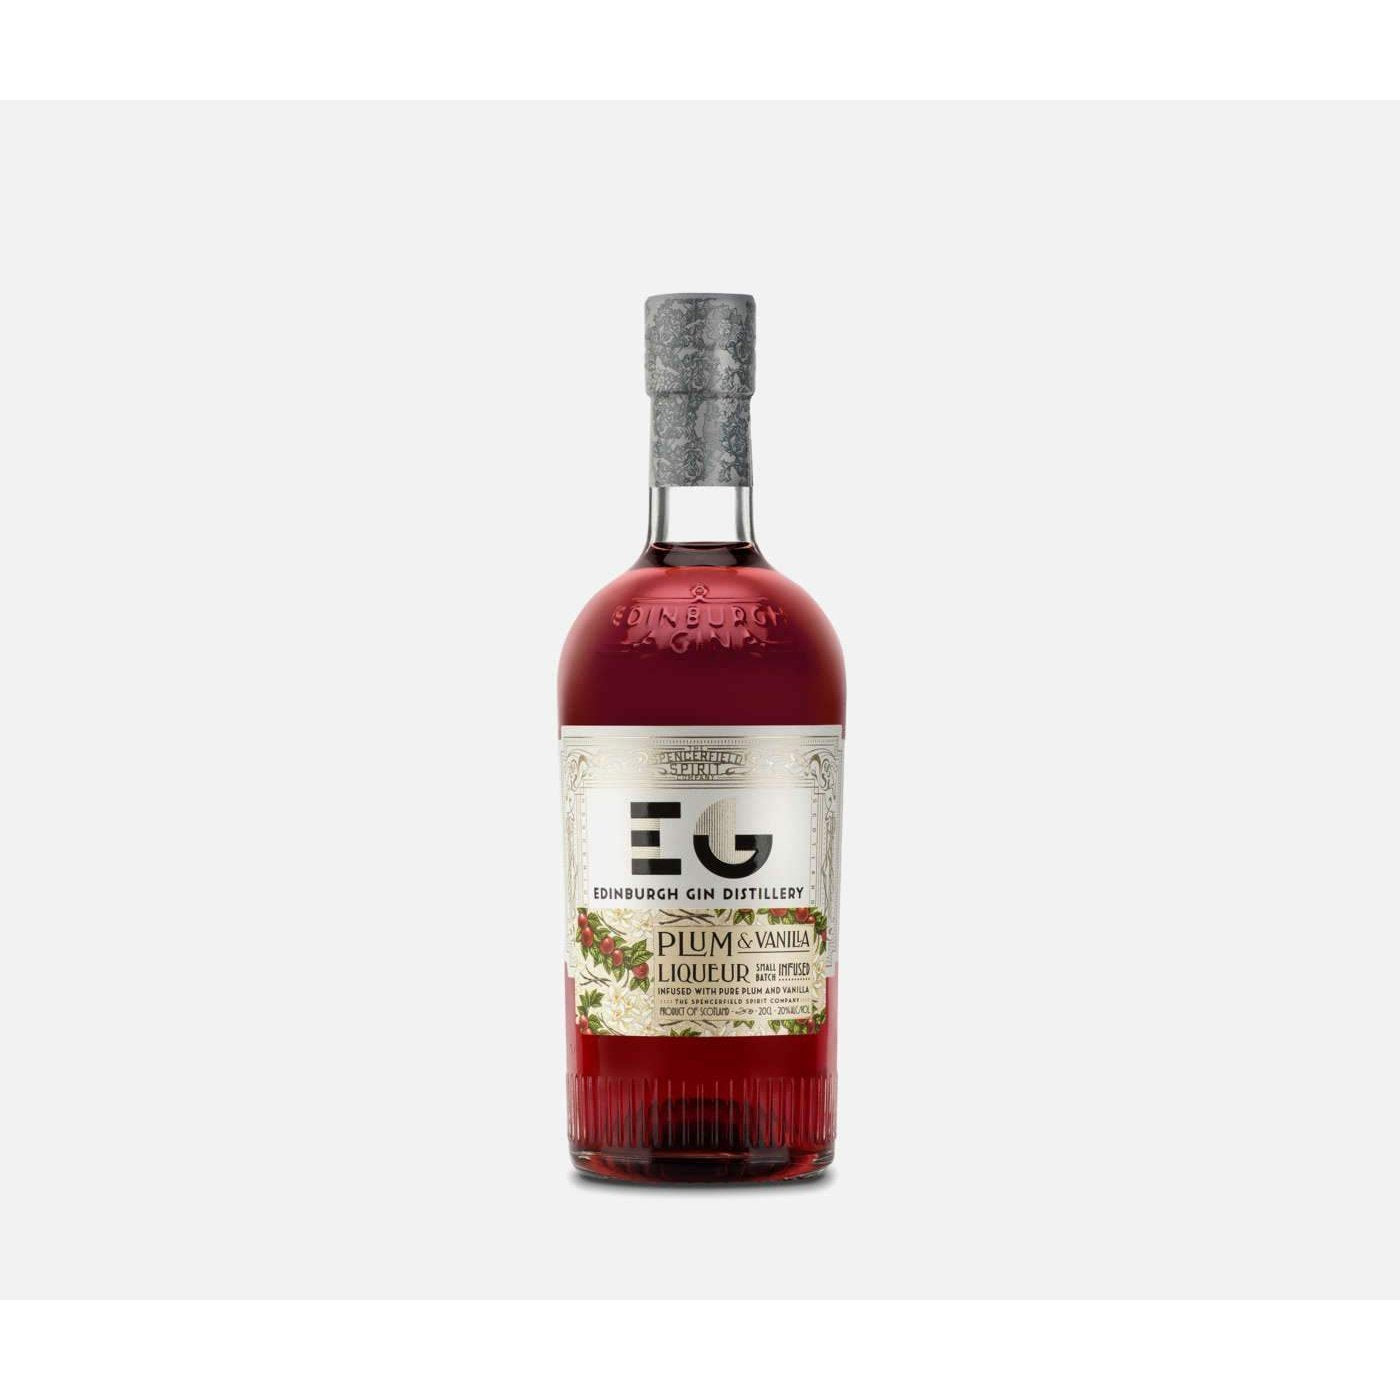 Edinburgh Gin's Plum & Vanilla Liqueur 20cl-Gin-5010852036152-Fountainhall Wines